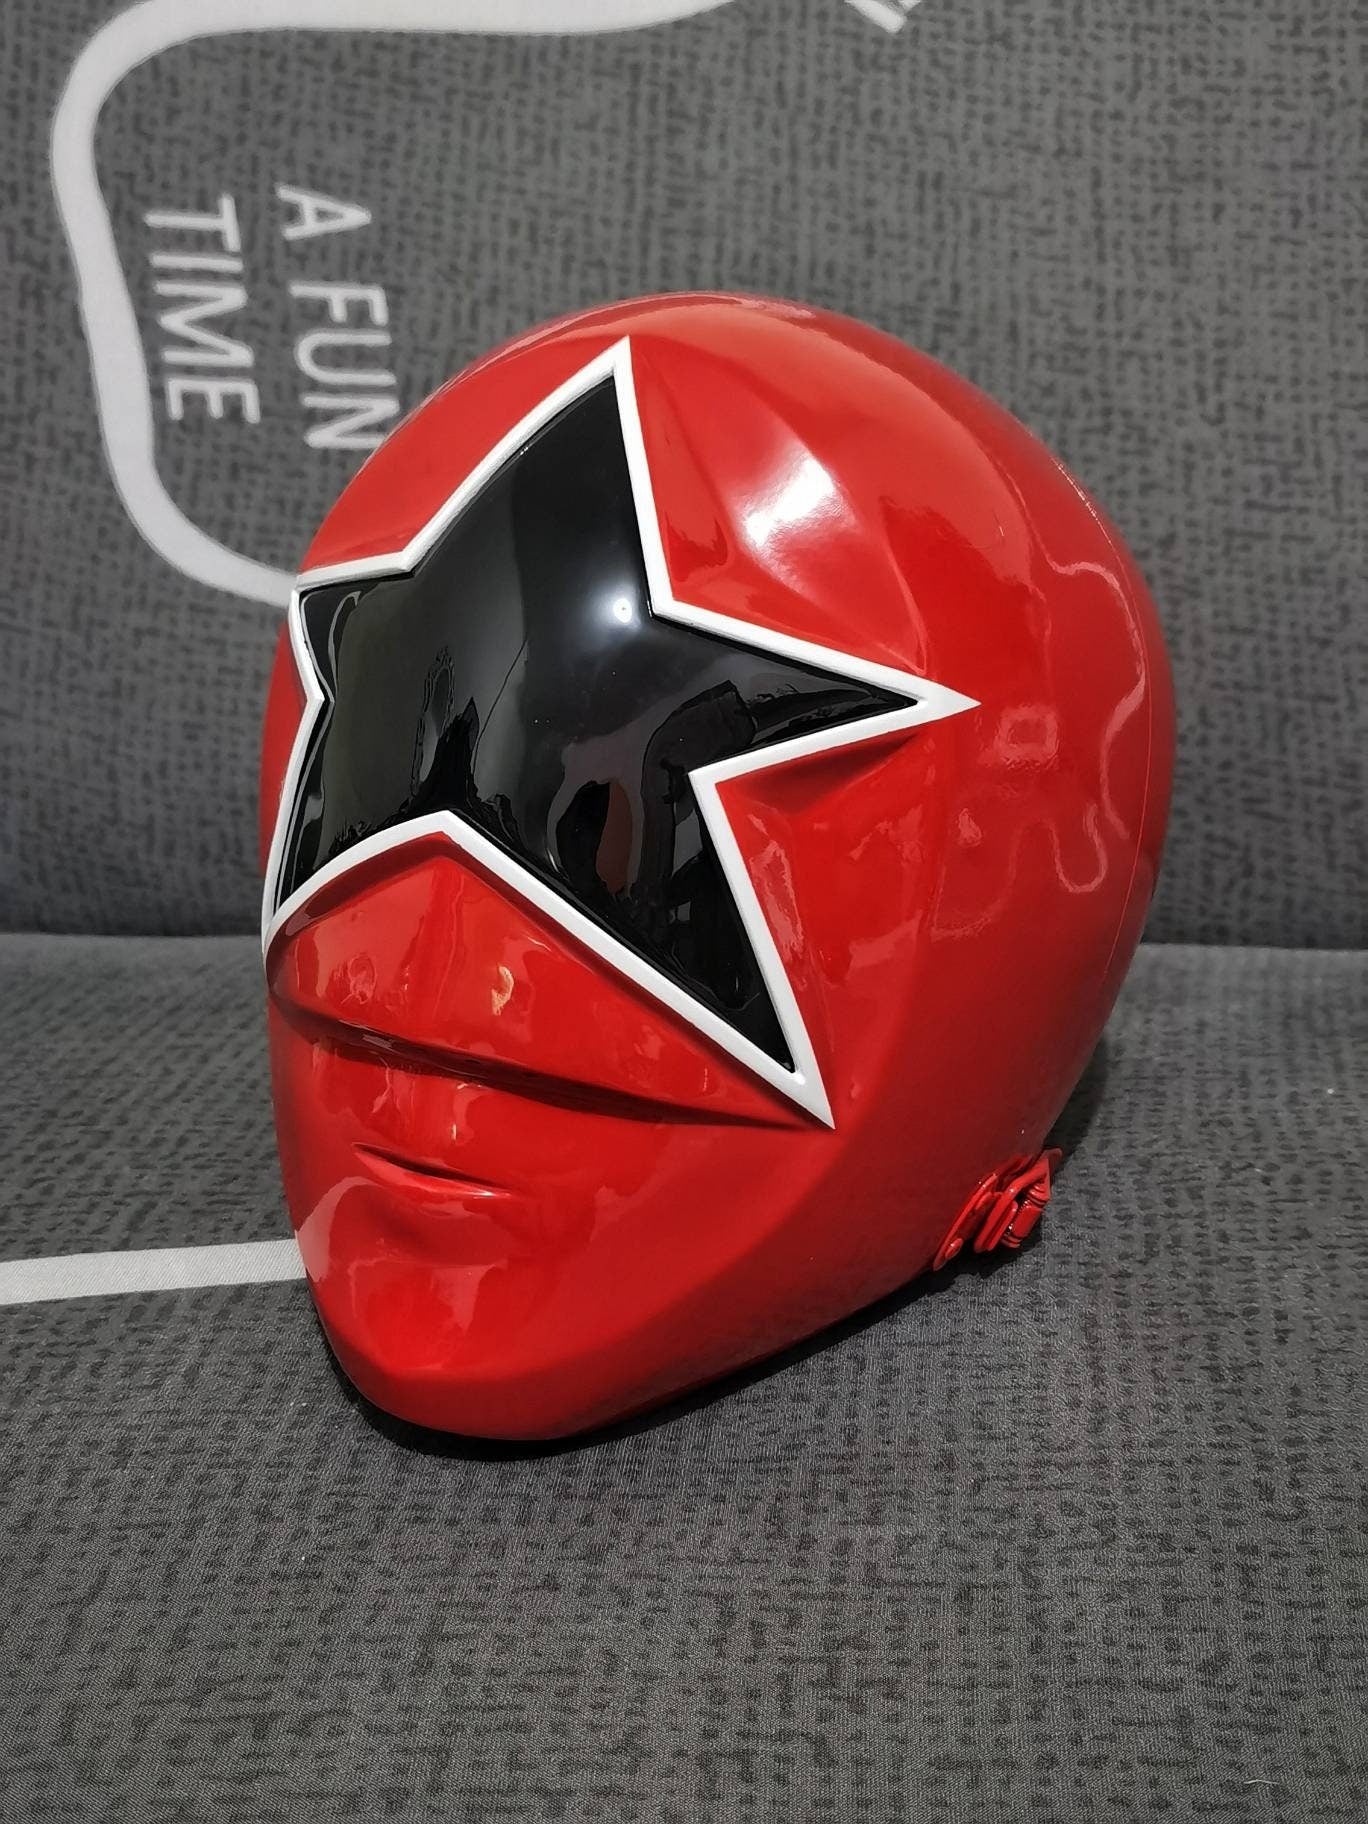 Power rangers Zeo red helmet